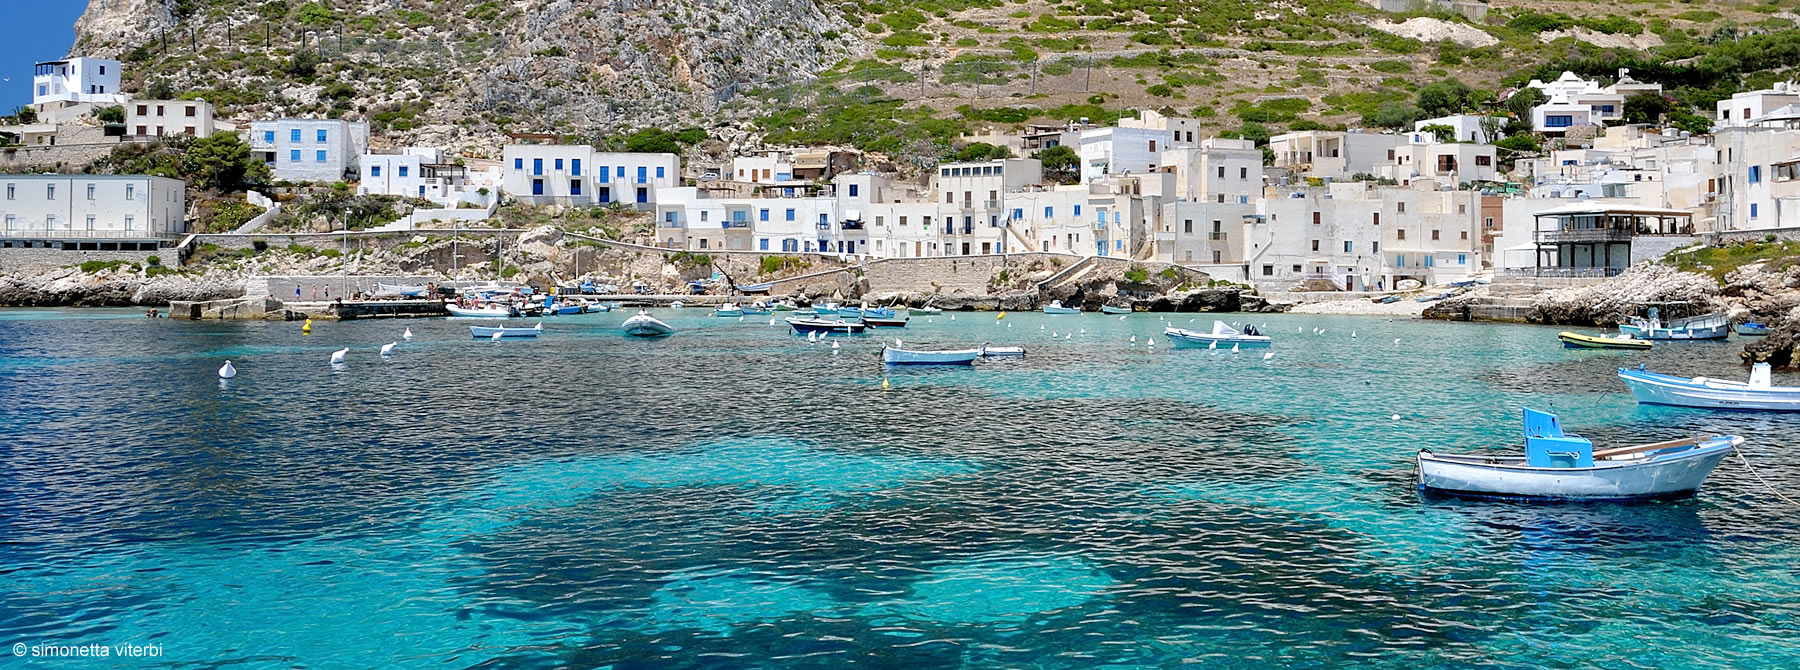 La tua vacanza in Sicilia